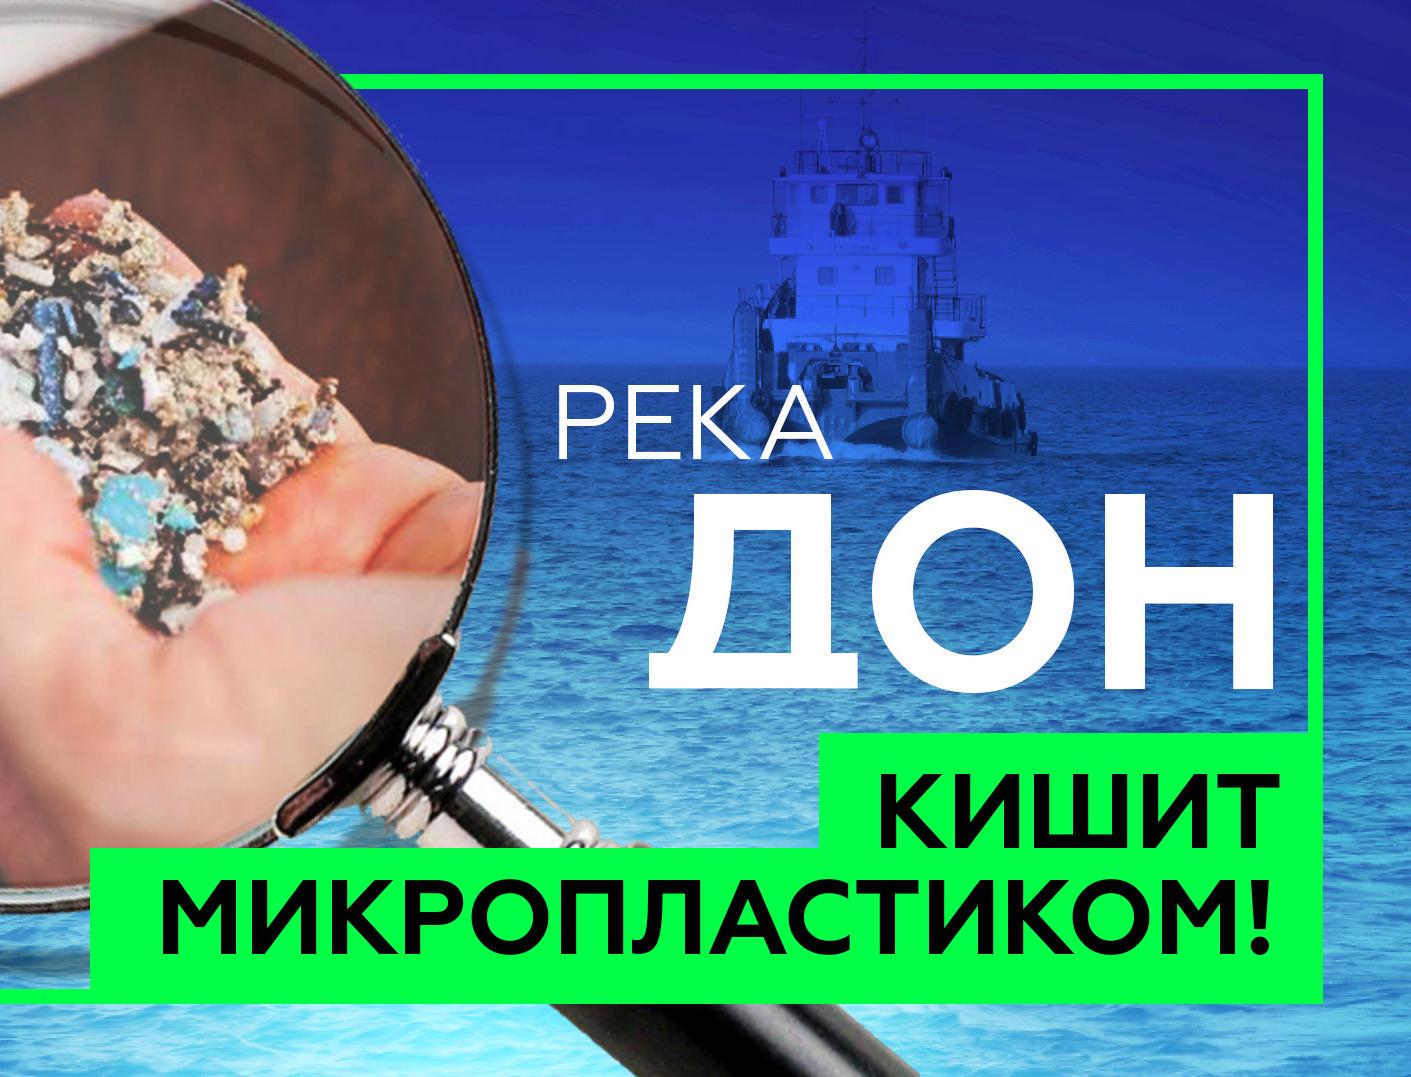 Видео: ученые обнаружили микропластик в российских реках